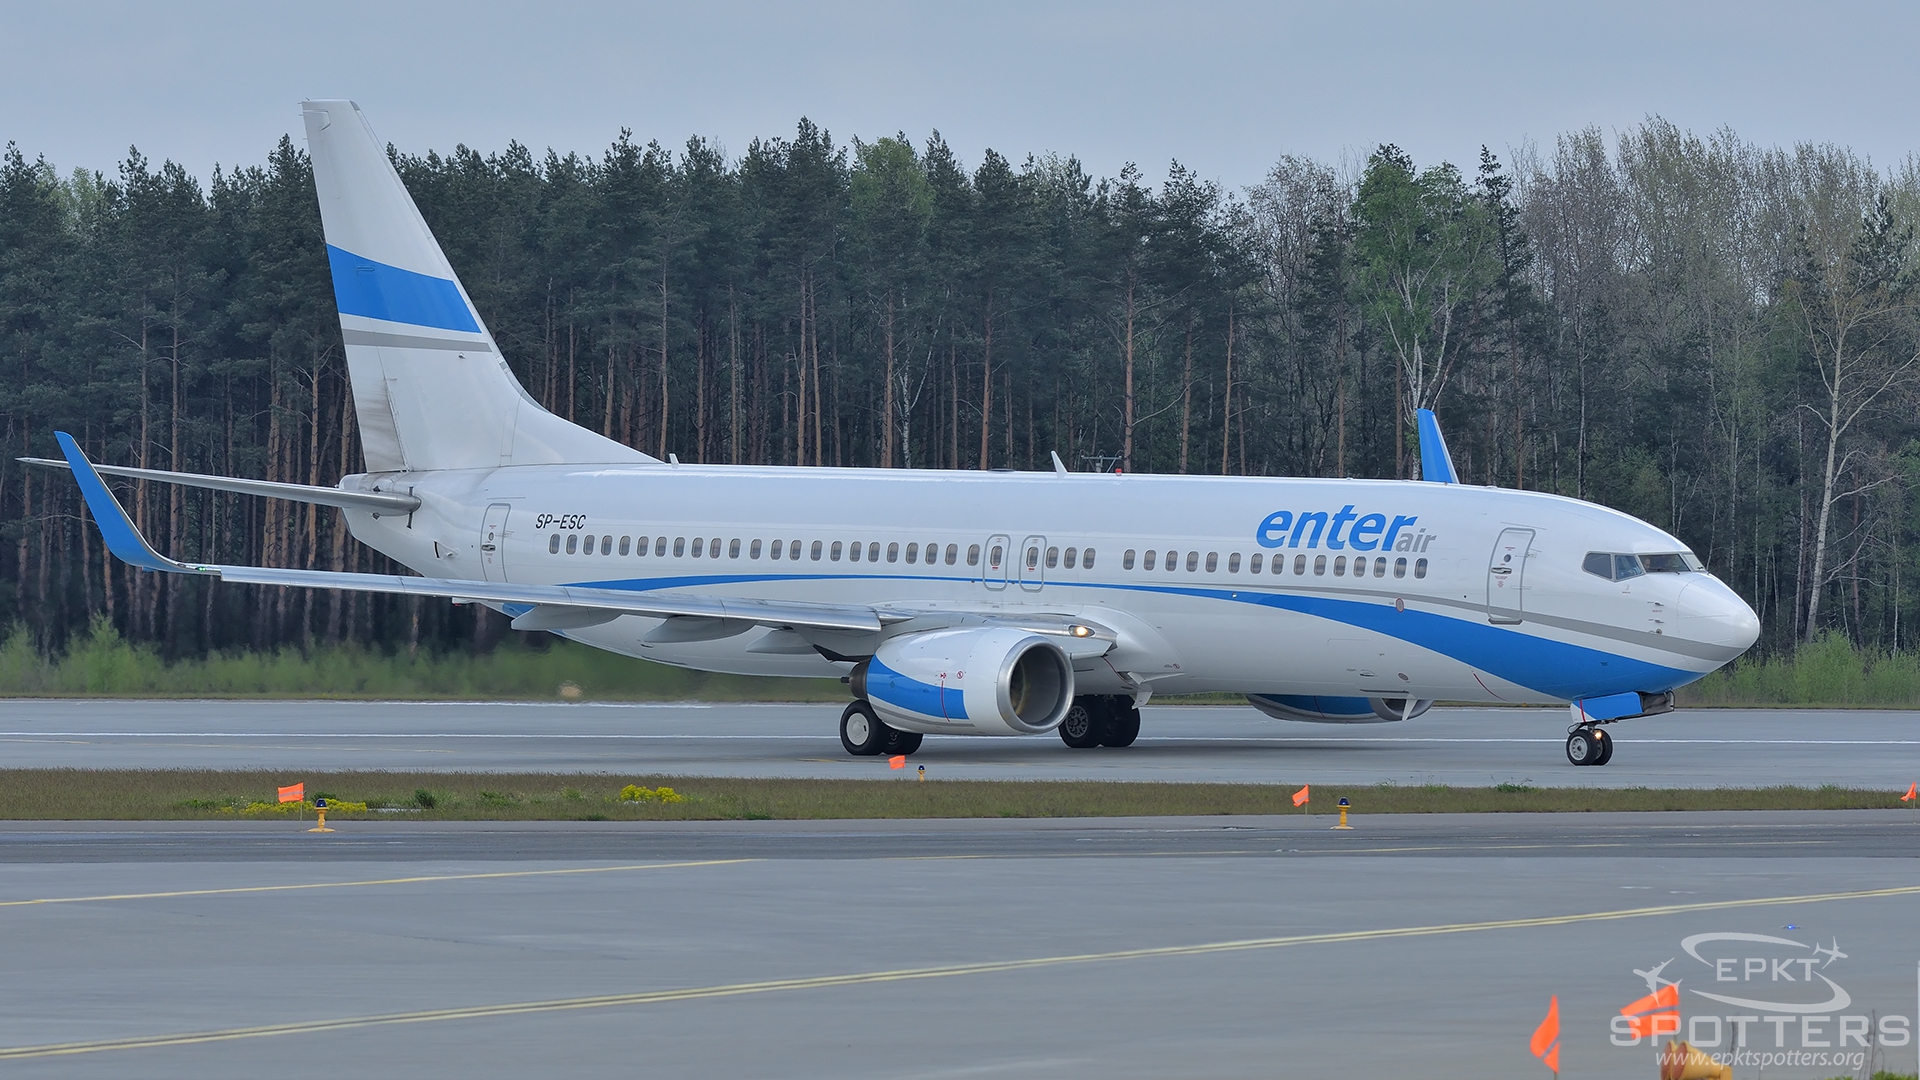 SP-ESC - Boeing 737 -8AS(WL) (EnterAir) / Pyrzowice - Katowice Poland [EPKT/KTW]